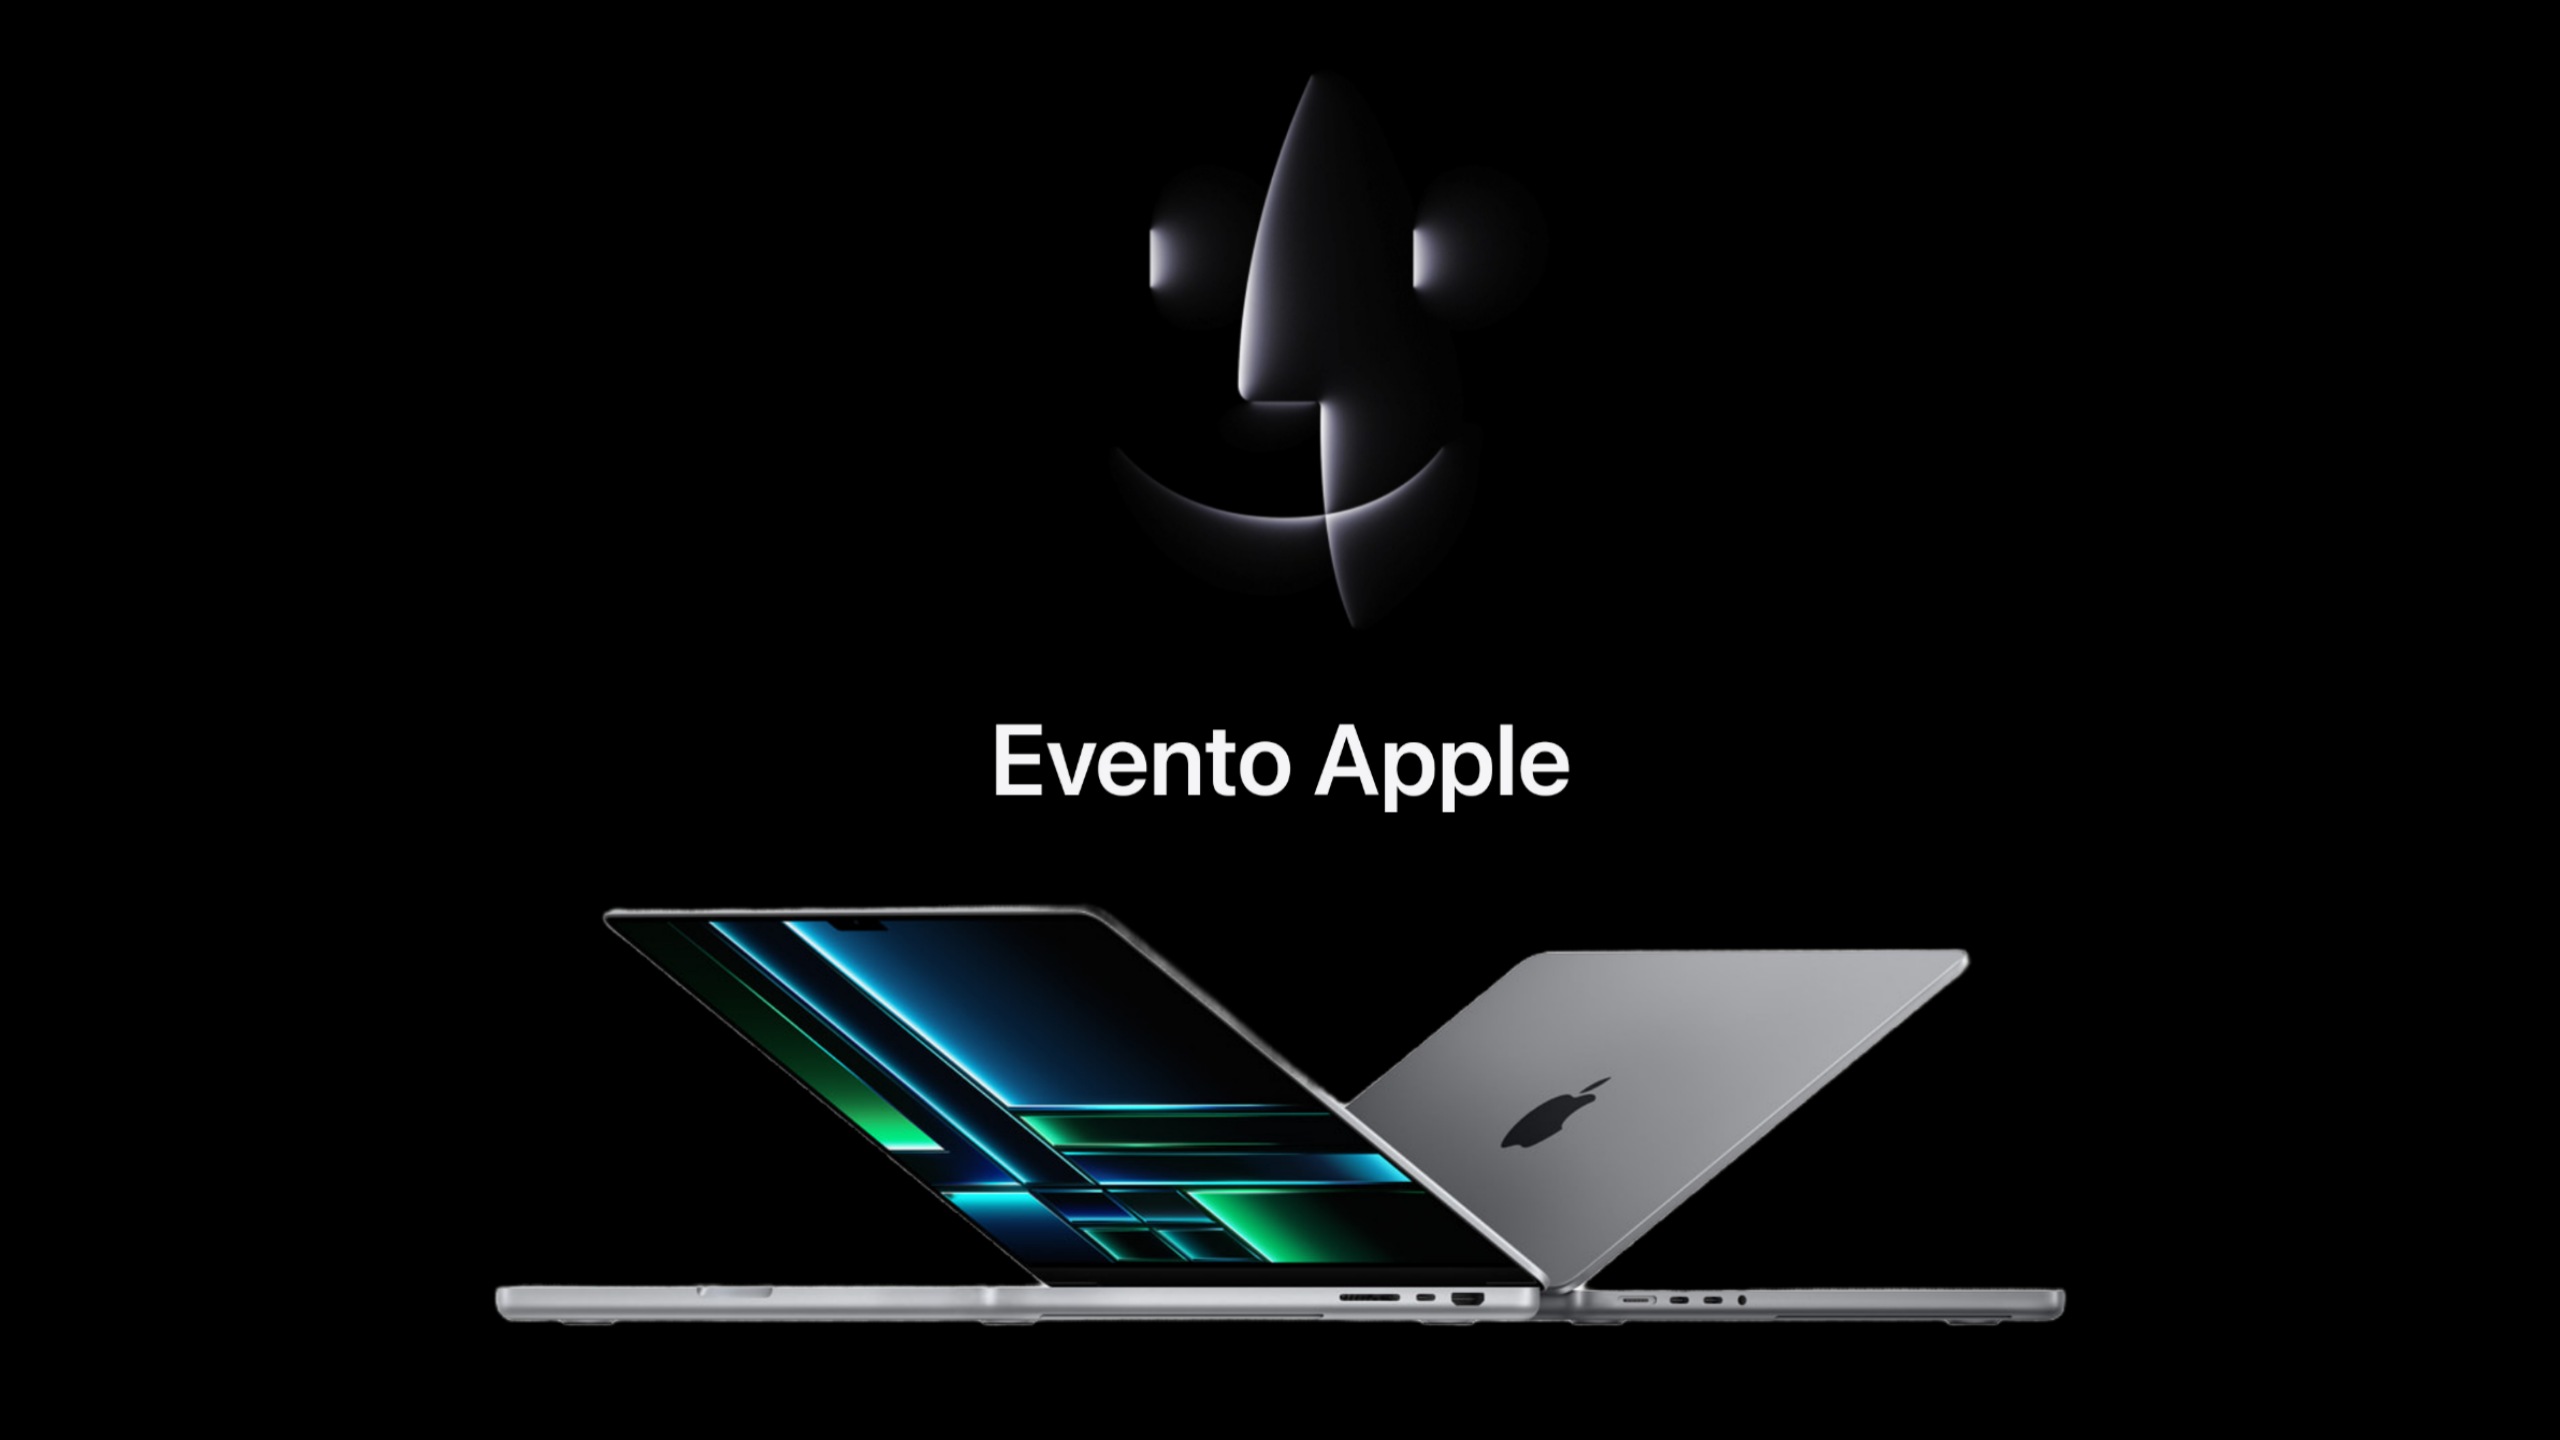 Evento Apple per Mac